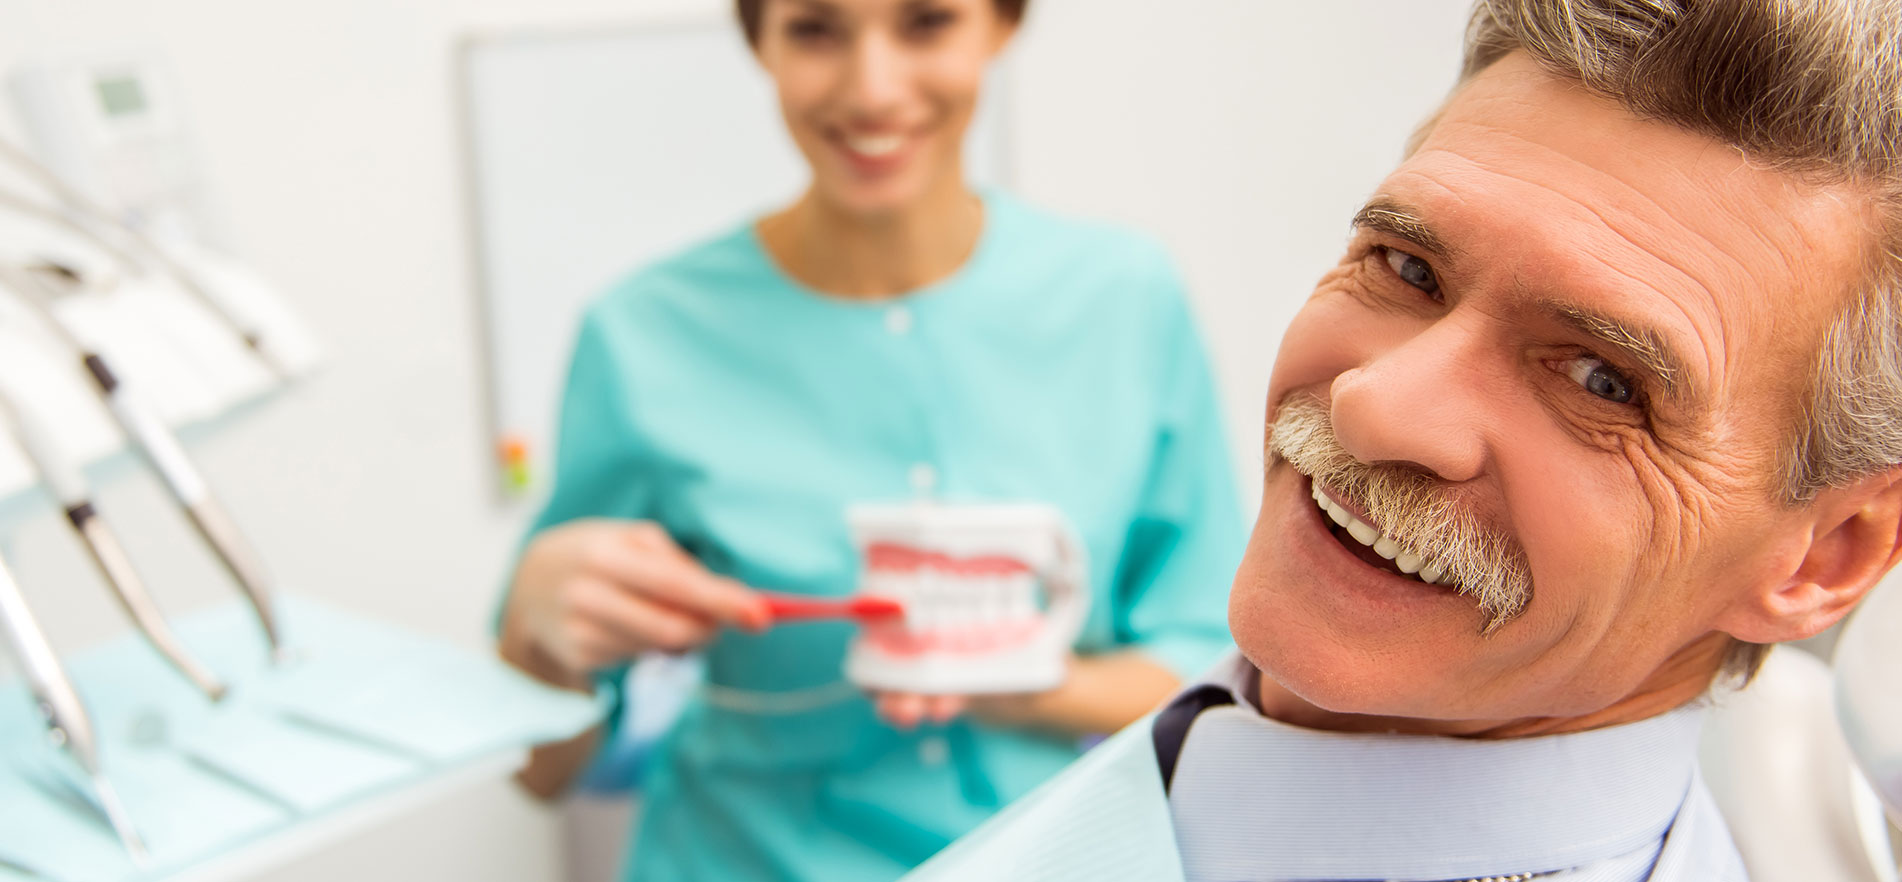 Man smiling at the dental